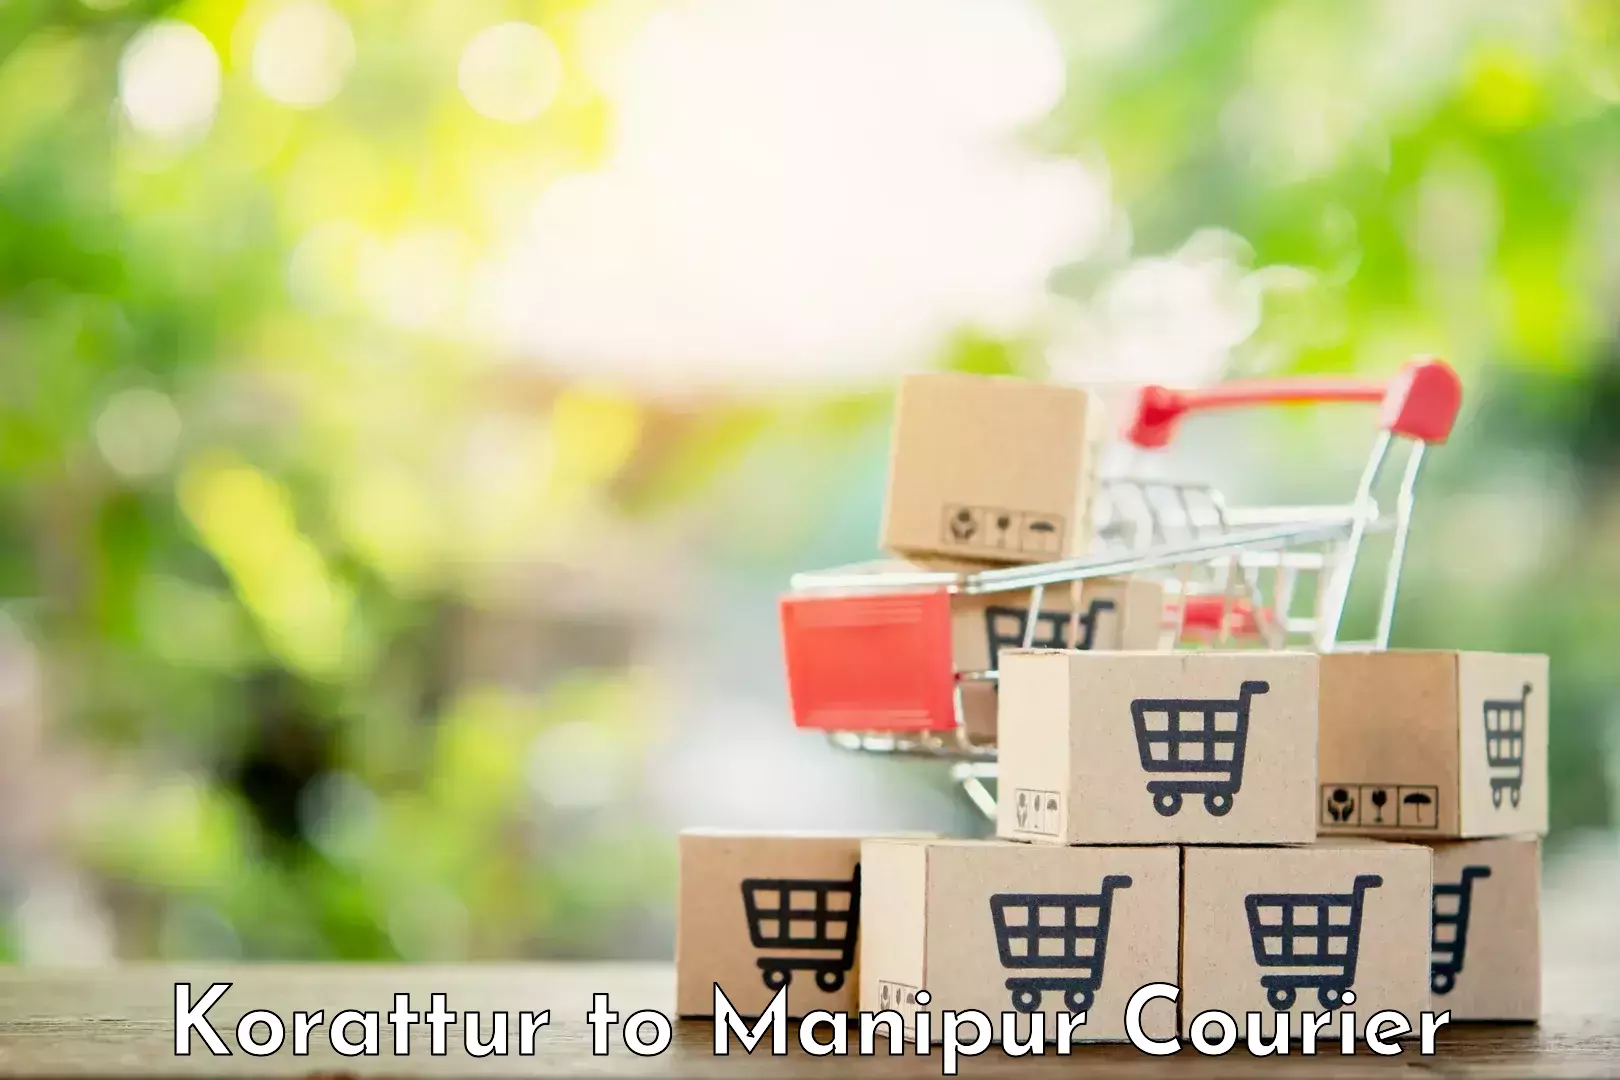 Modern courier technology Korattur to Manipur